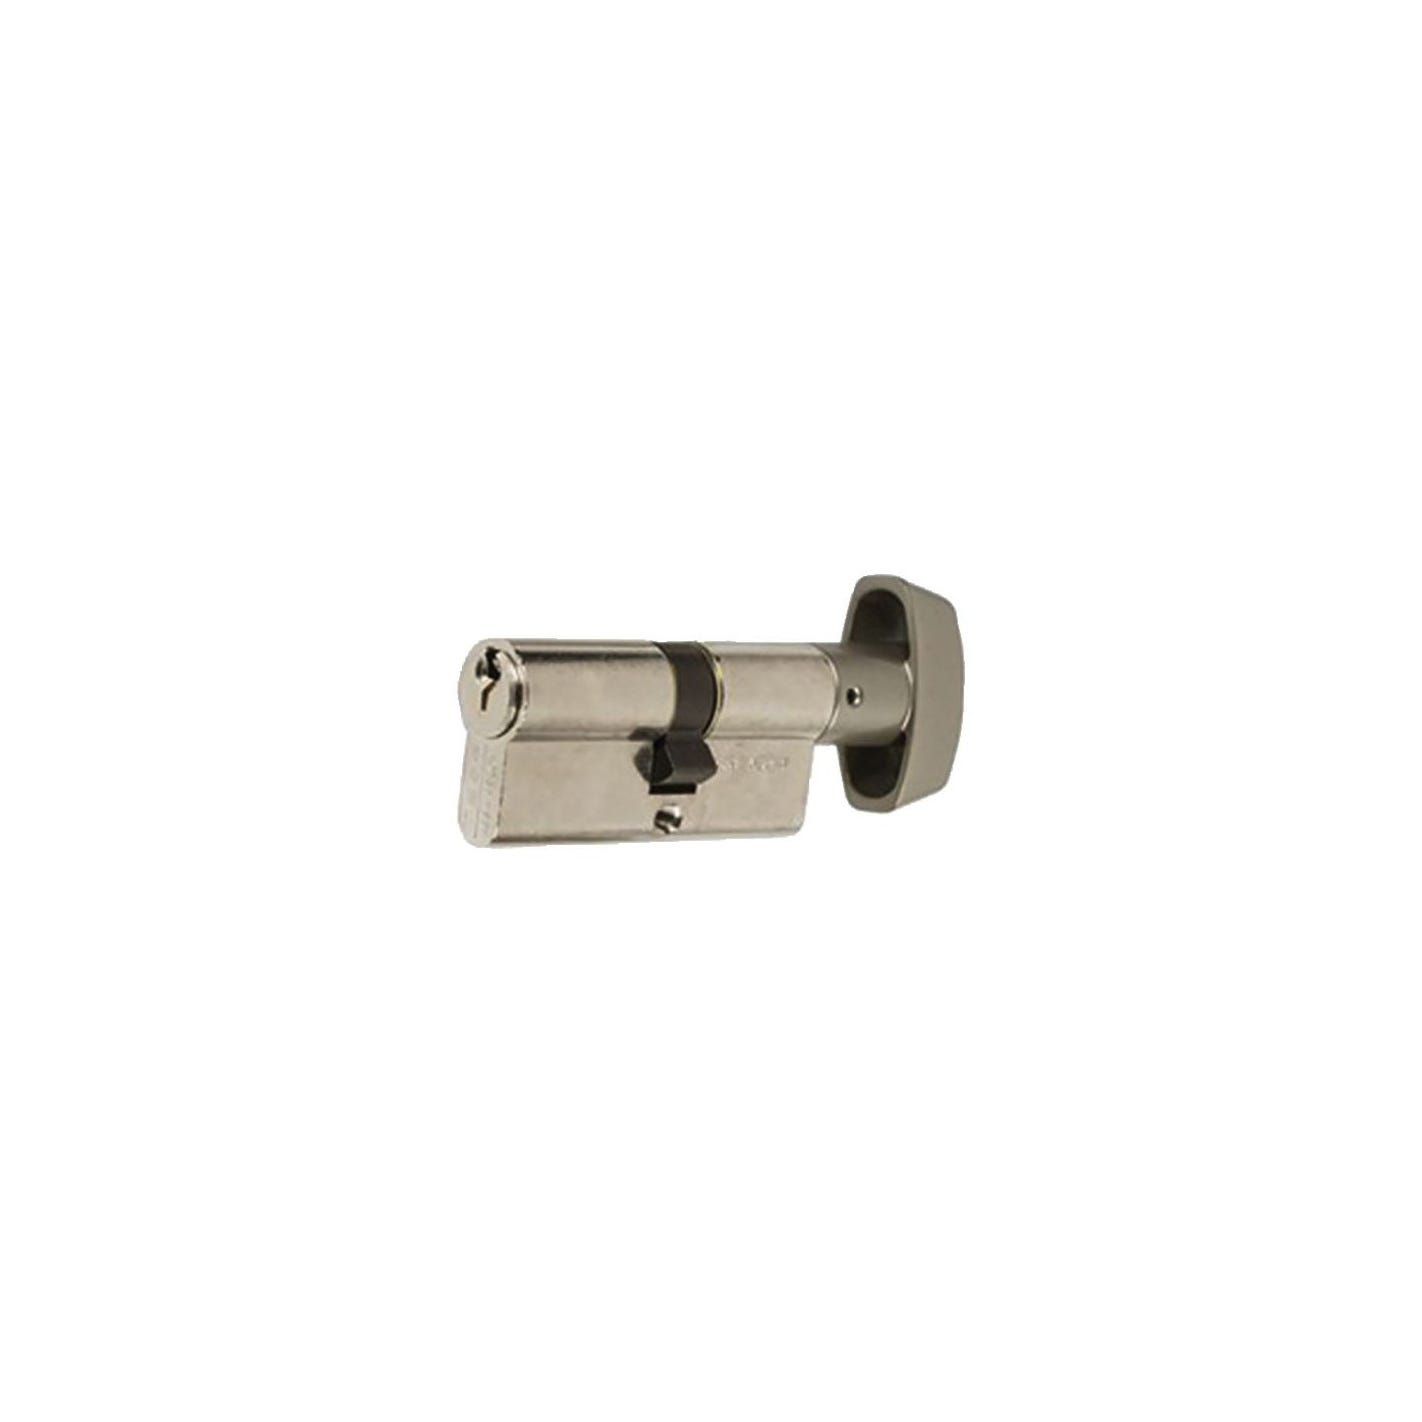 Cylindre double de sûreté à bouton TE-5 sur numéro 40 x B30 finition laiton nickelé 3 clés 0